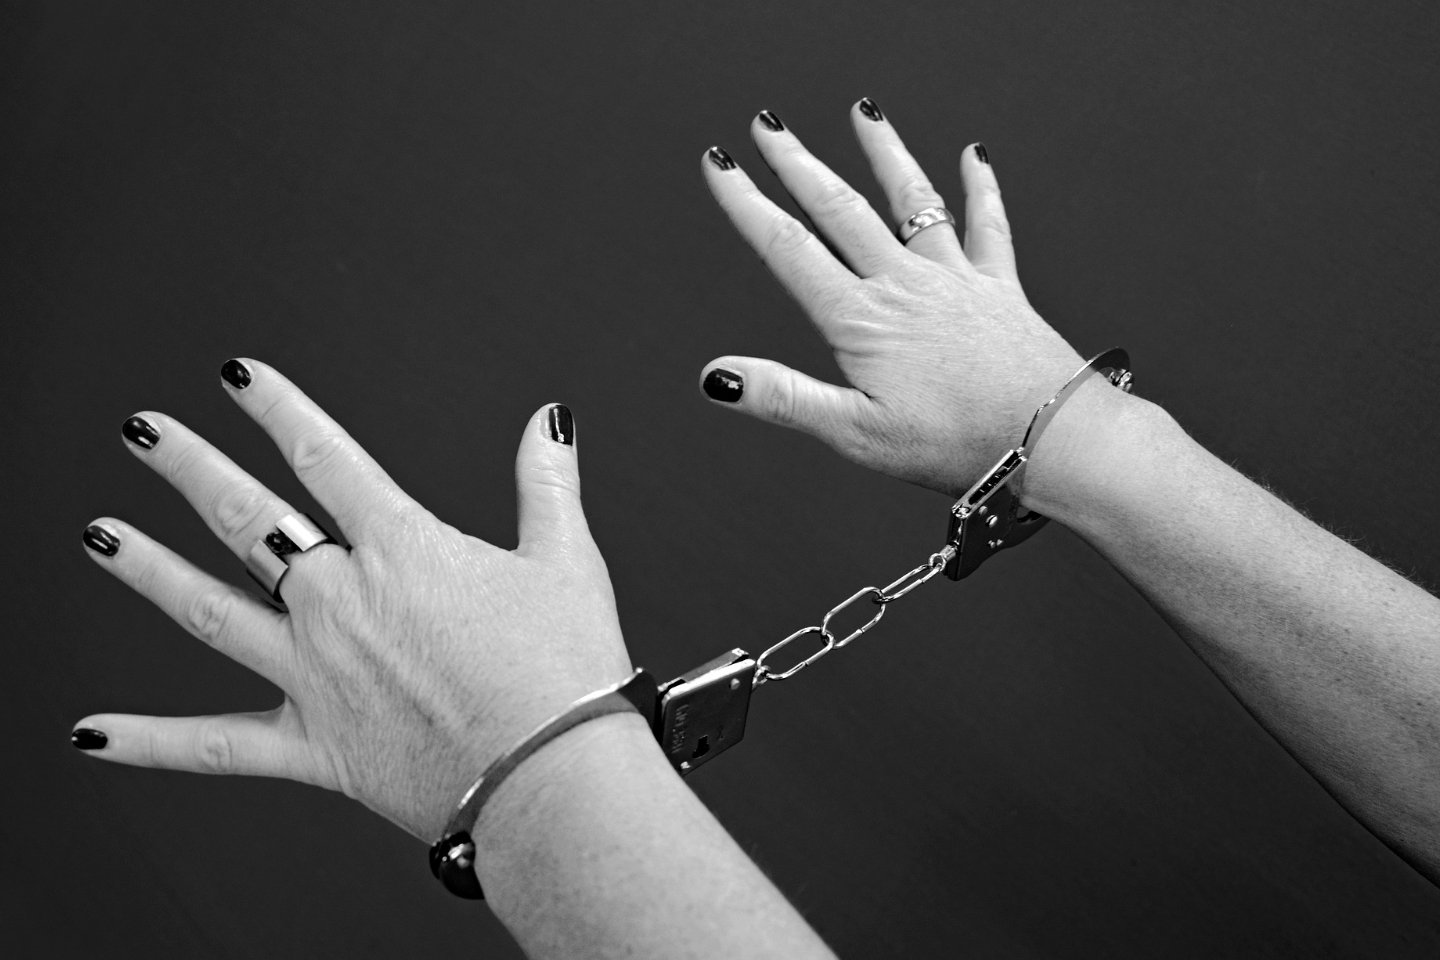 Происшествия в Казахстане и мире / Криминальные новости / ОПМ "STOP трафик": 37 фактов торговли людьми выявили полицейские РК